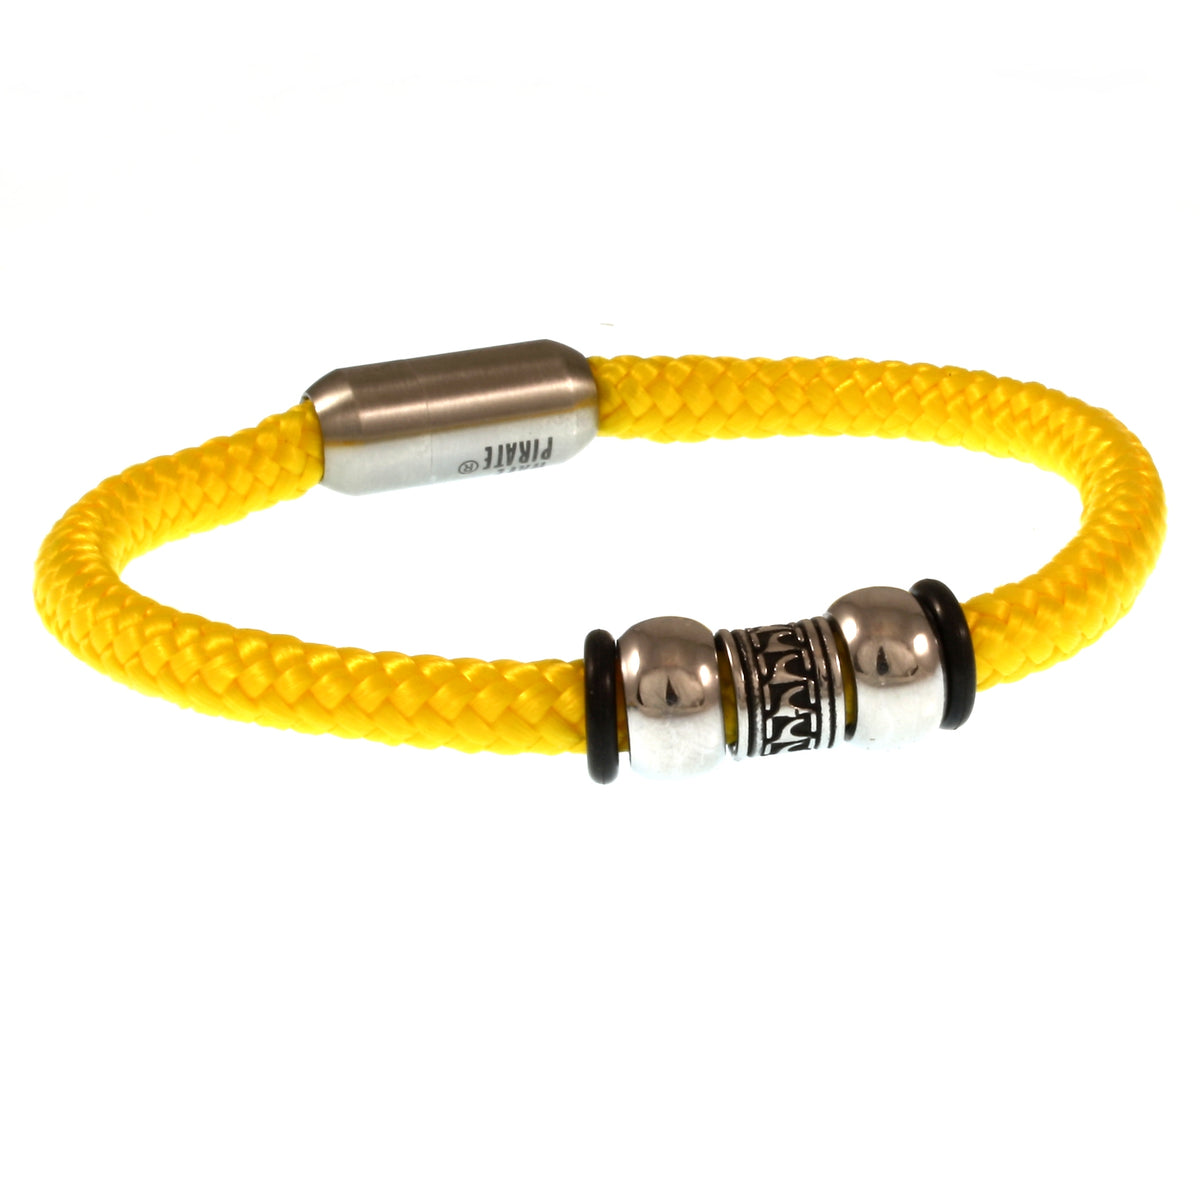 Herren-Segeltau-Armband-atoll-gelb-geflochten-Edelstahlverschluss-vorn-wavepirate-shop-st